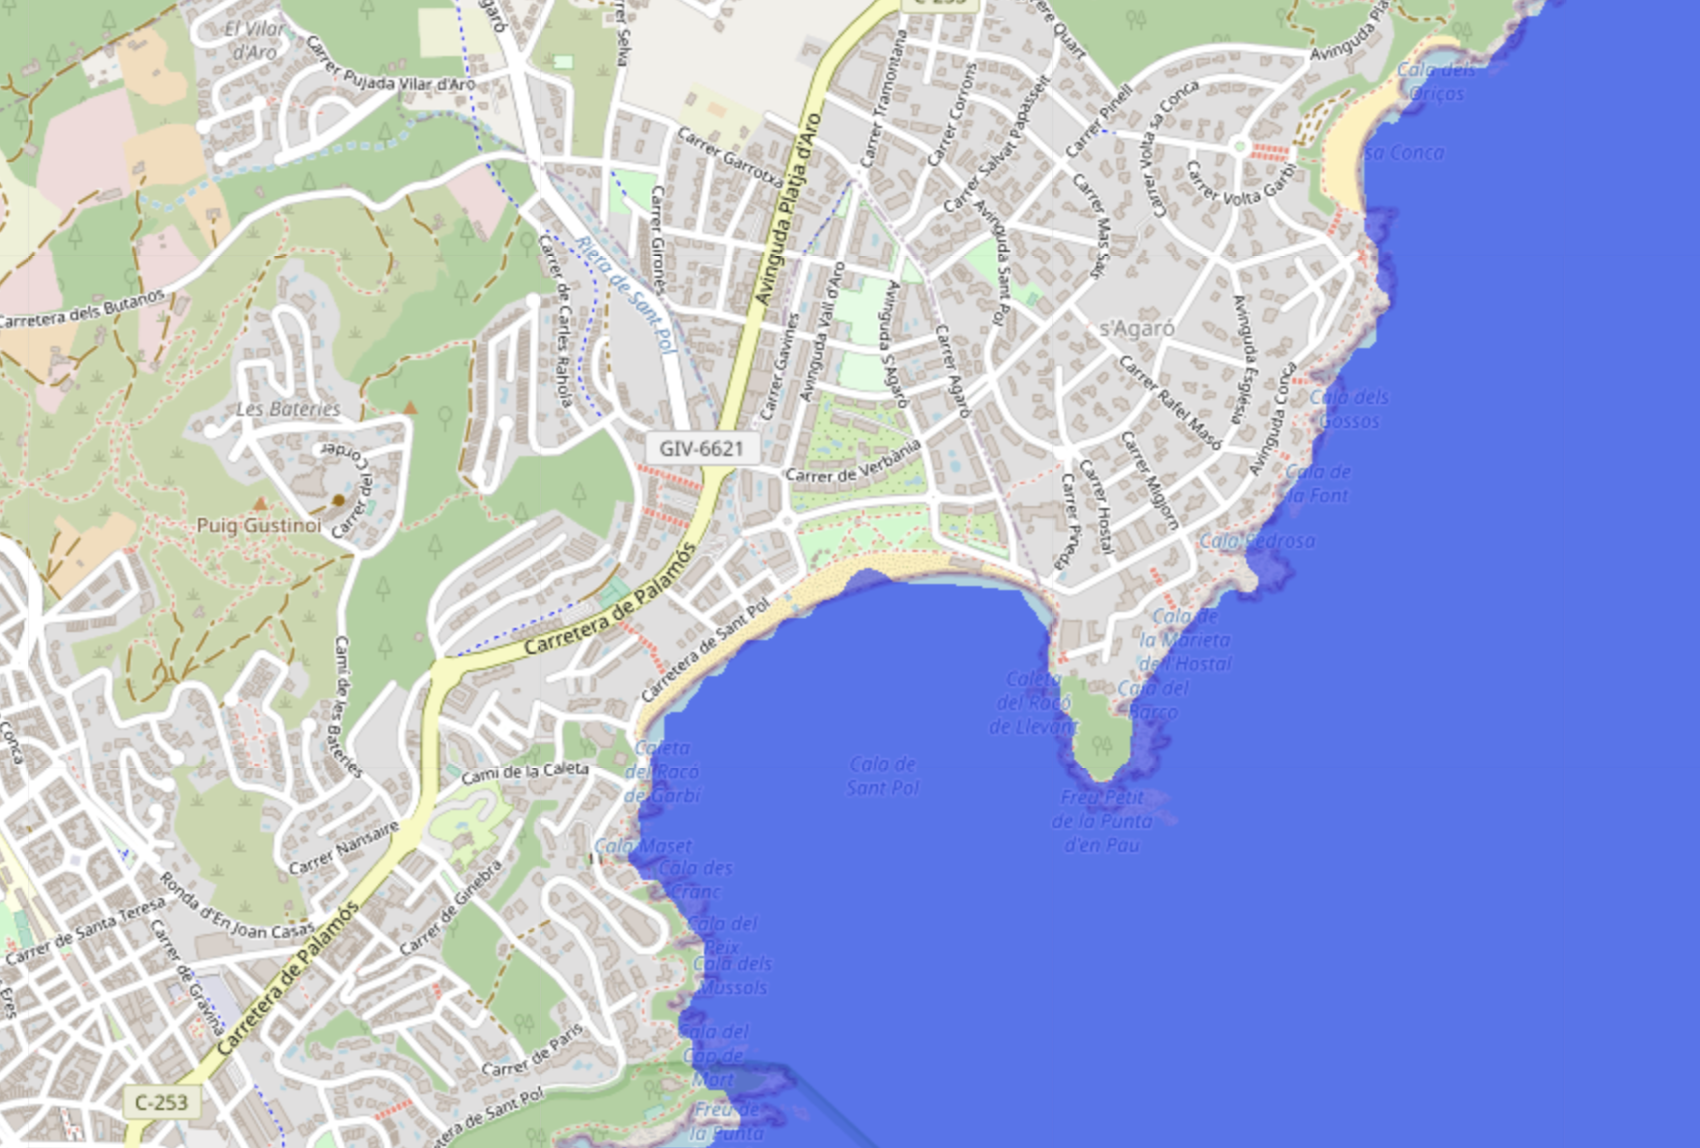 Augment del nivell del mar a la zona de Platja d'Aro i Sant Feliu